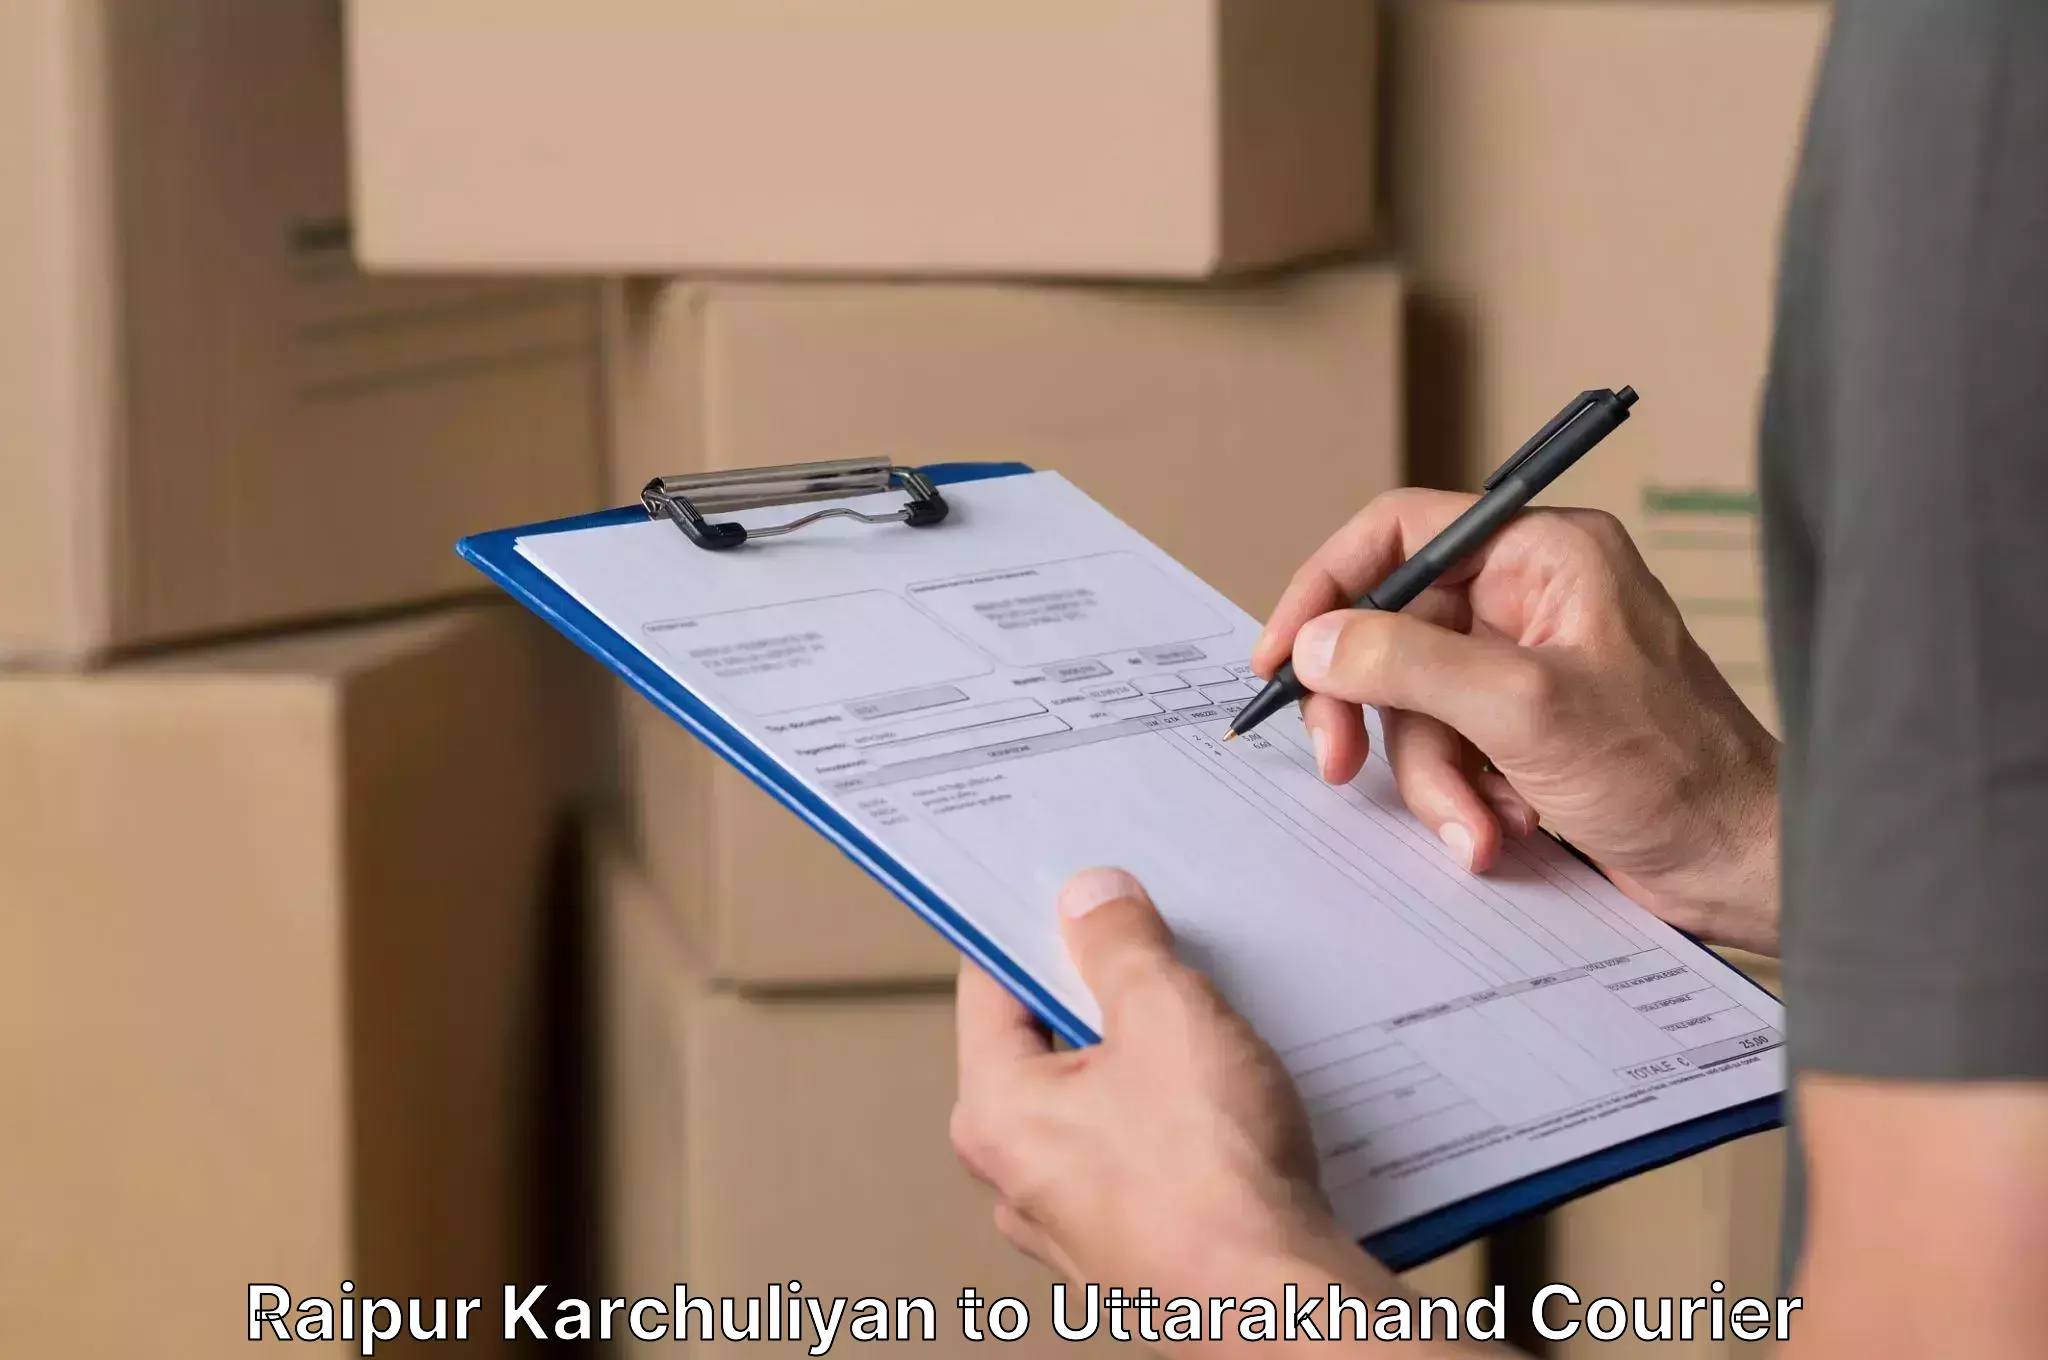 Professional moving company Raipur Karchuliyan to Gairsain